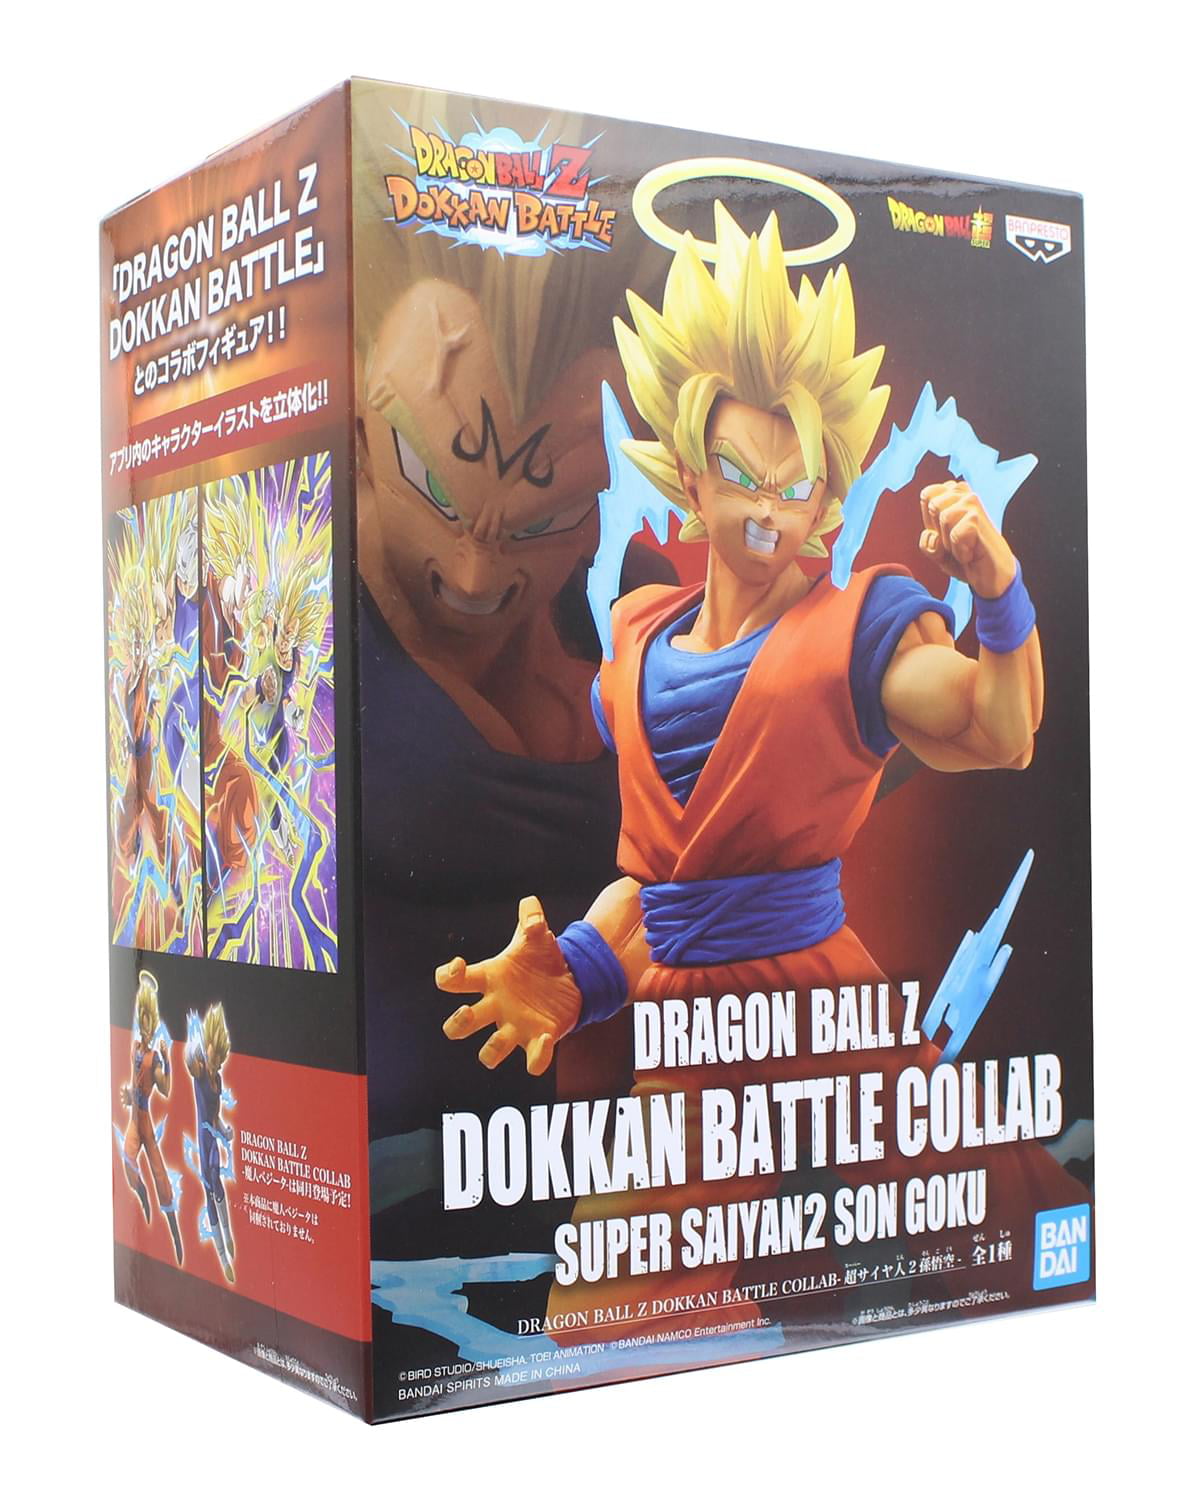 DRAGONBALL Z Banpresto DOKKAN BATTLE COLLAB-Super Saiyan 2 Son Goku Figure